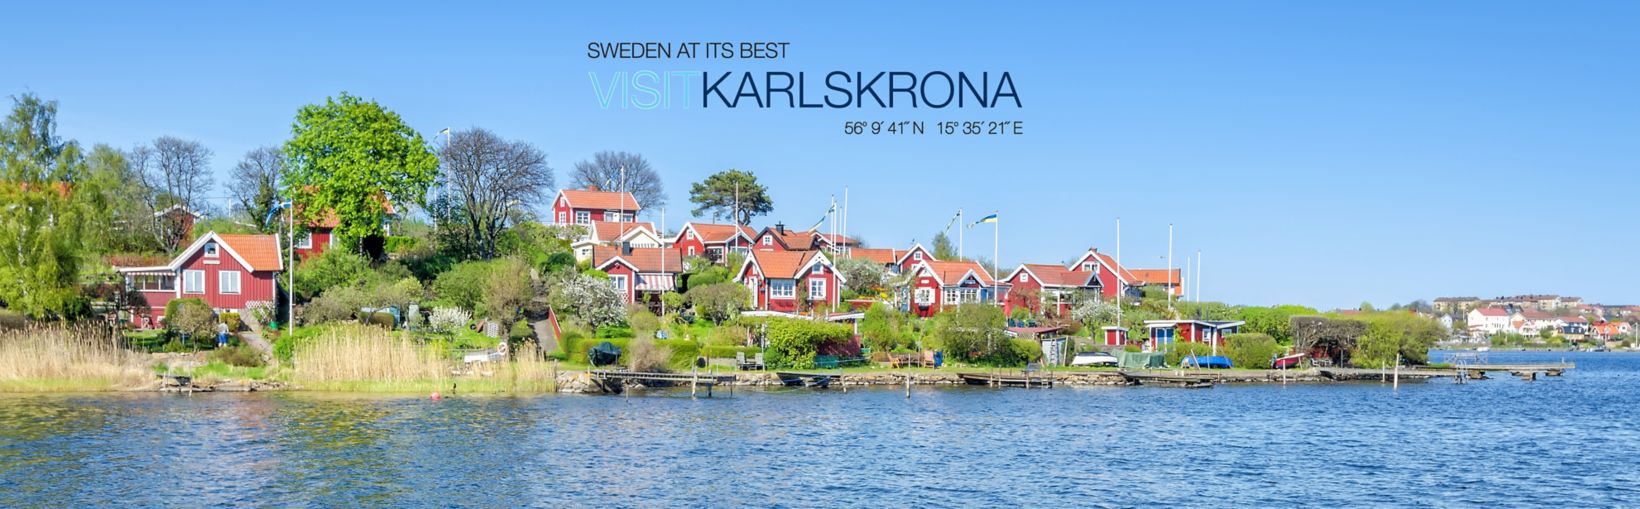 Panorama van traditionele gebouwen met rode muren en daken aan de kust van Karlskrona op het schiereiland Brandaholm